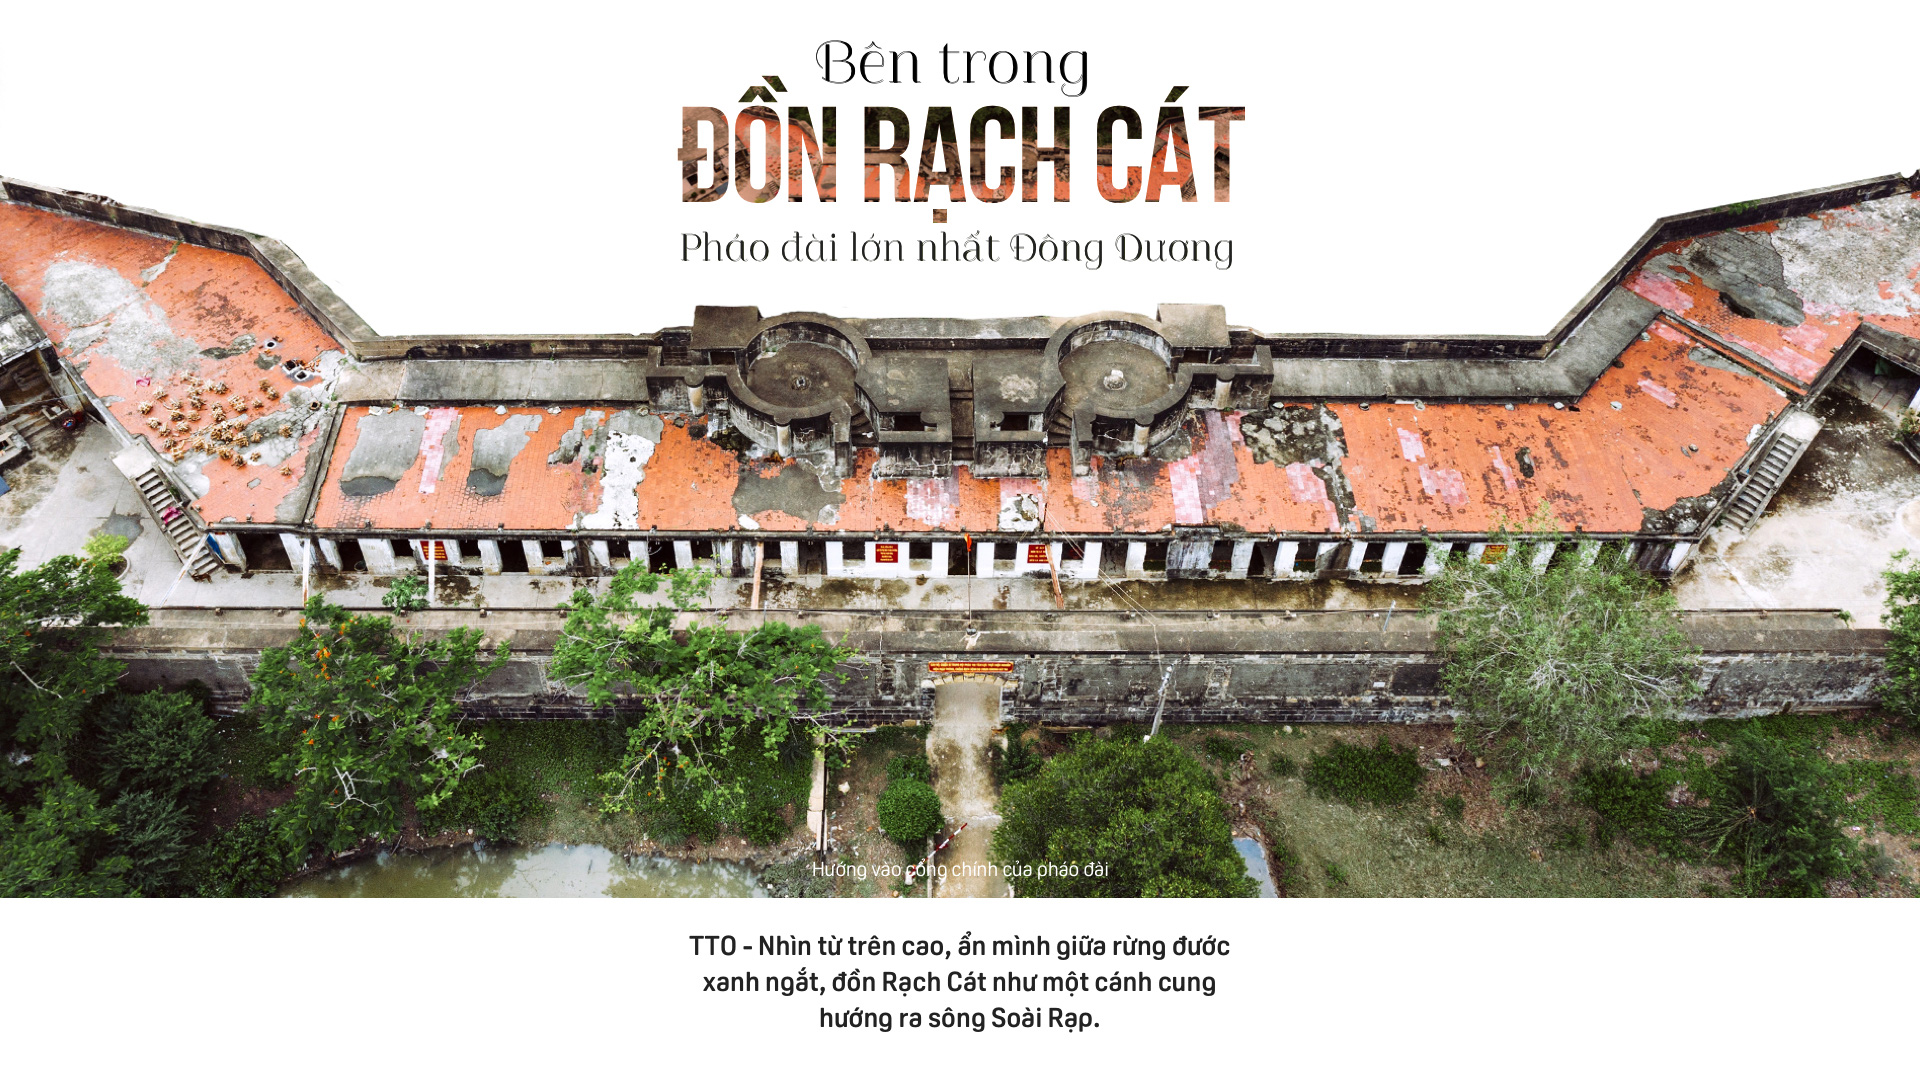 Don-rach-cat-1